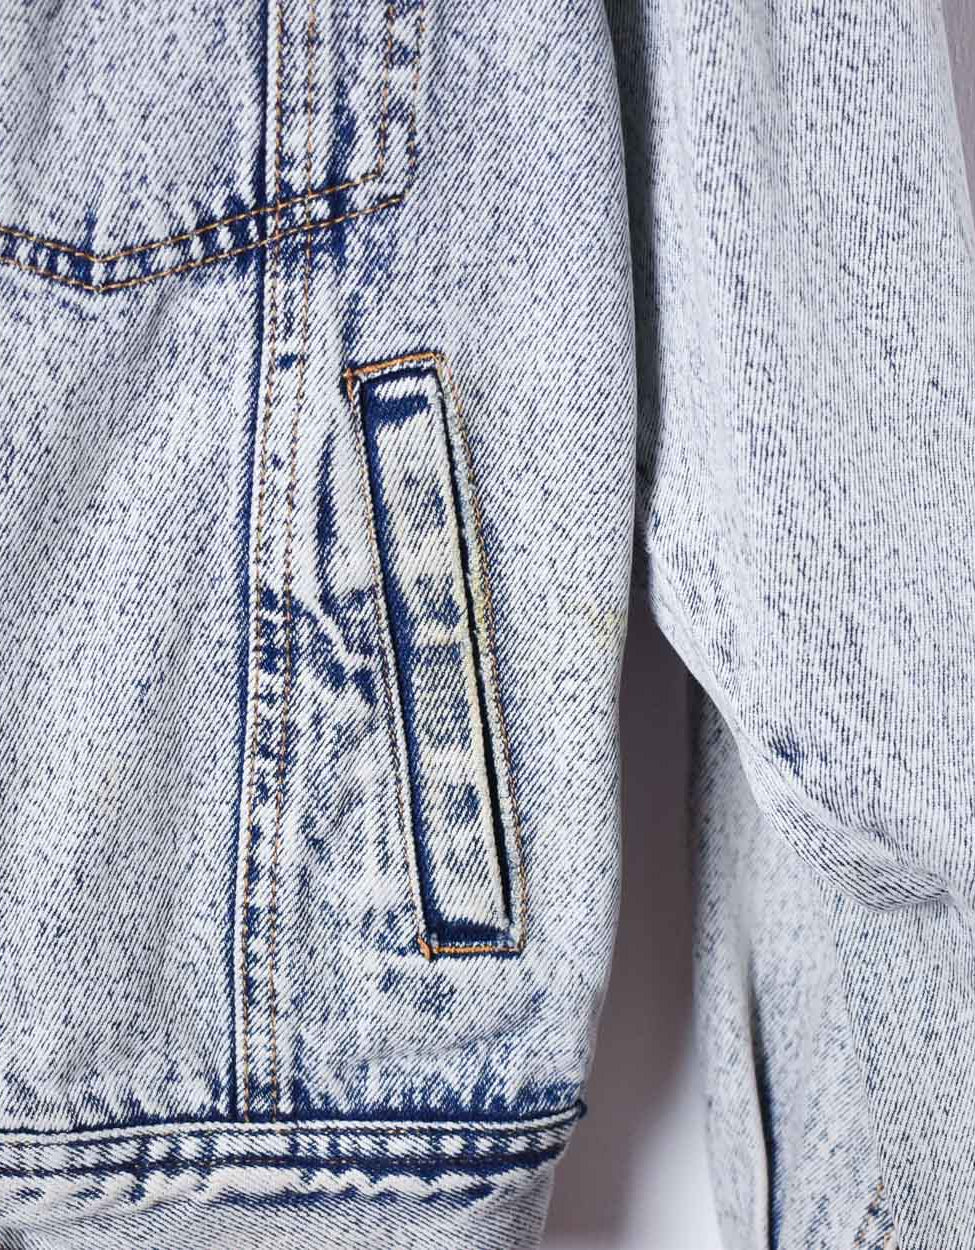 Blue Levi's Washed Denim Jacket - Medium Women's